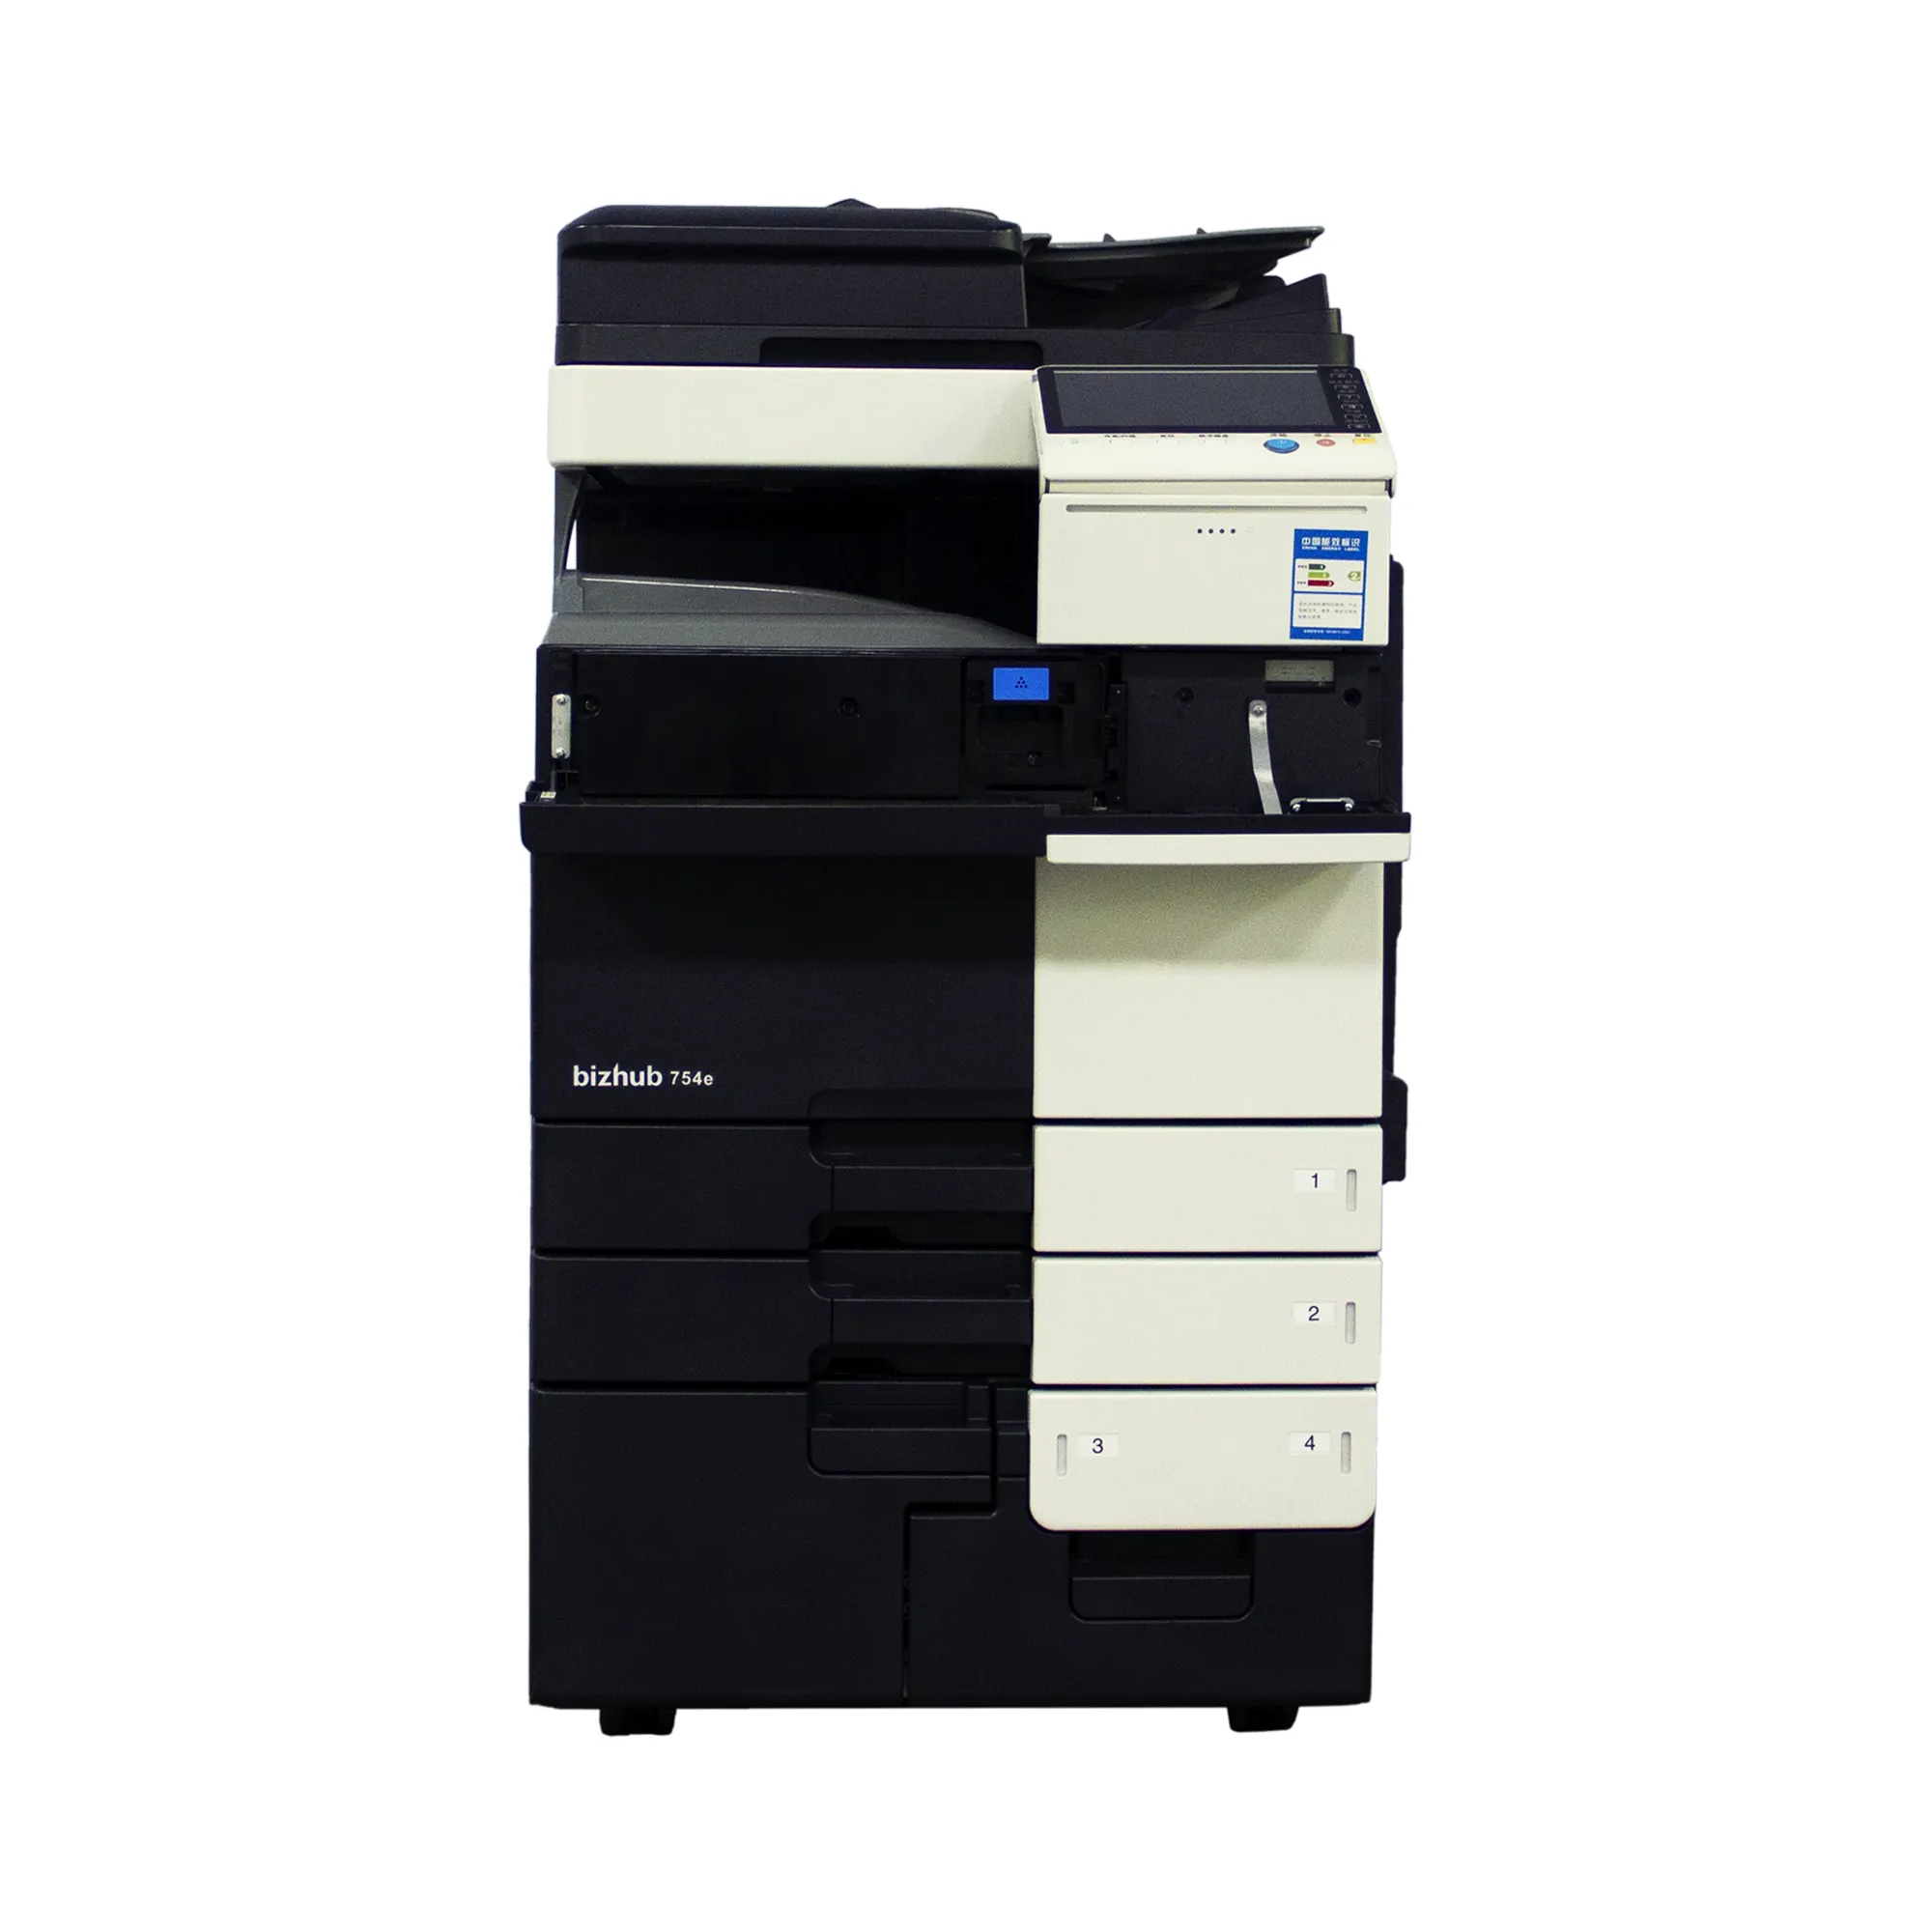 מדפסות דיגיטליות משומשות משופצות מכונת הדפסה עבור קוניקה מינולטה ביזהוב 754 מכונת צילום